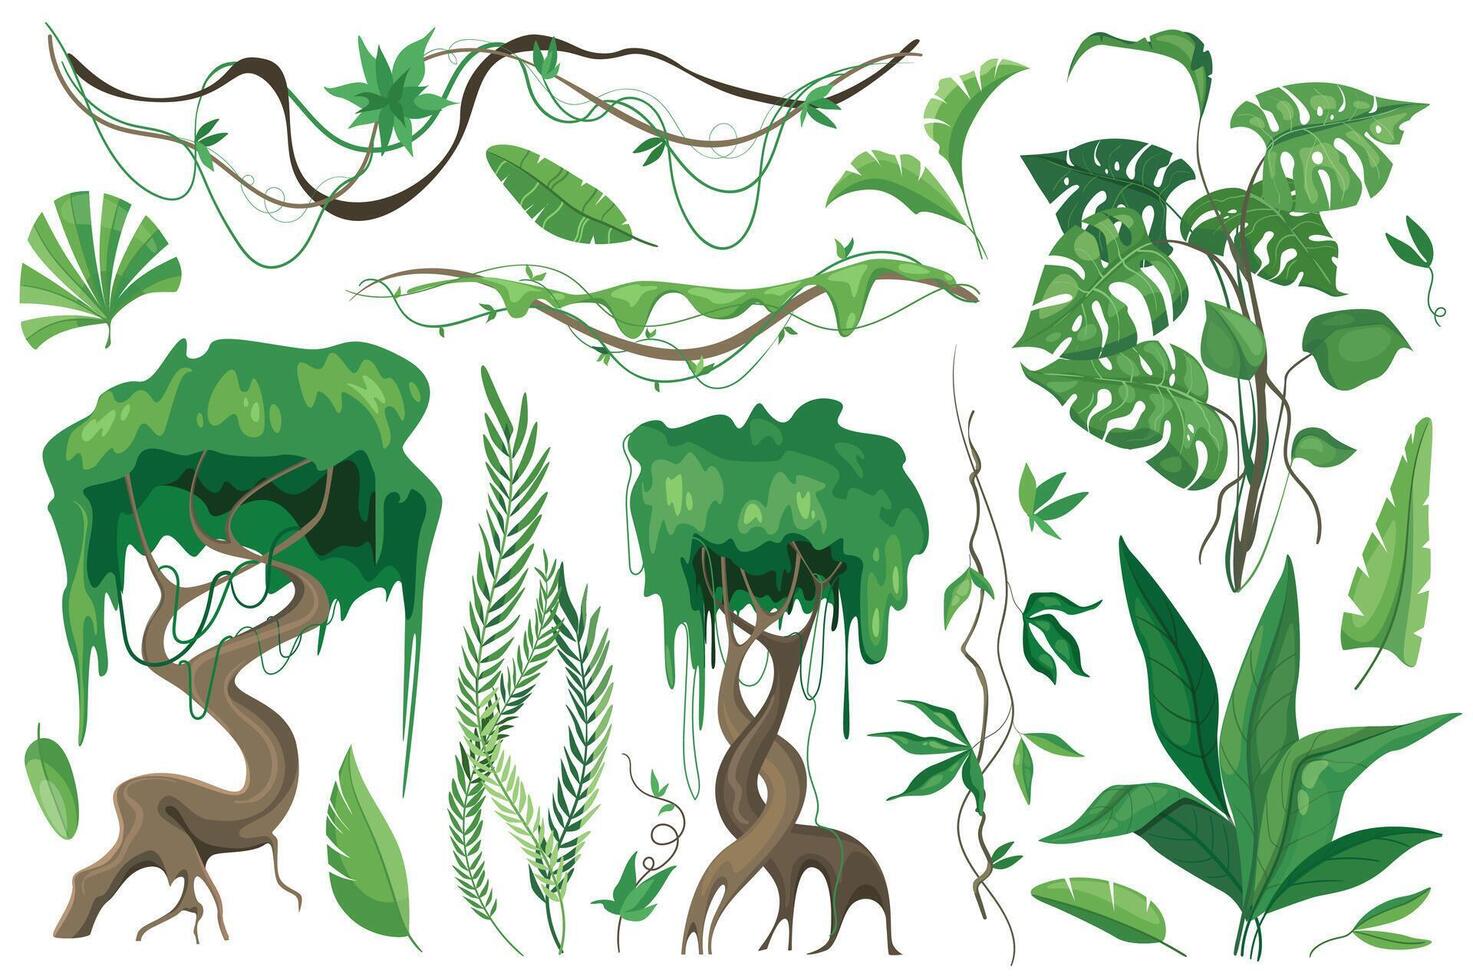 tropisk växter och lianer uppsättning grafisk element i platt design. bunt av annorlunda typ exotisk träd och löv, vild flora och Övrig grön djungel lövverk. vektor illustration isolerat objekt